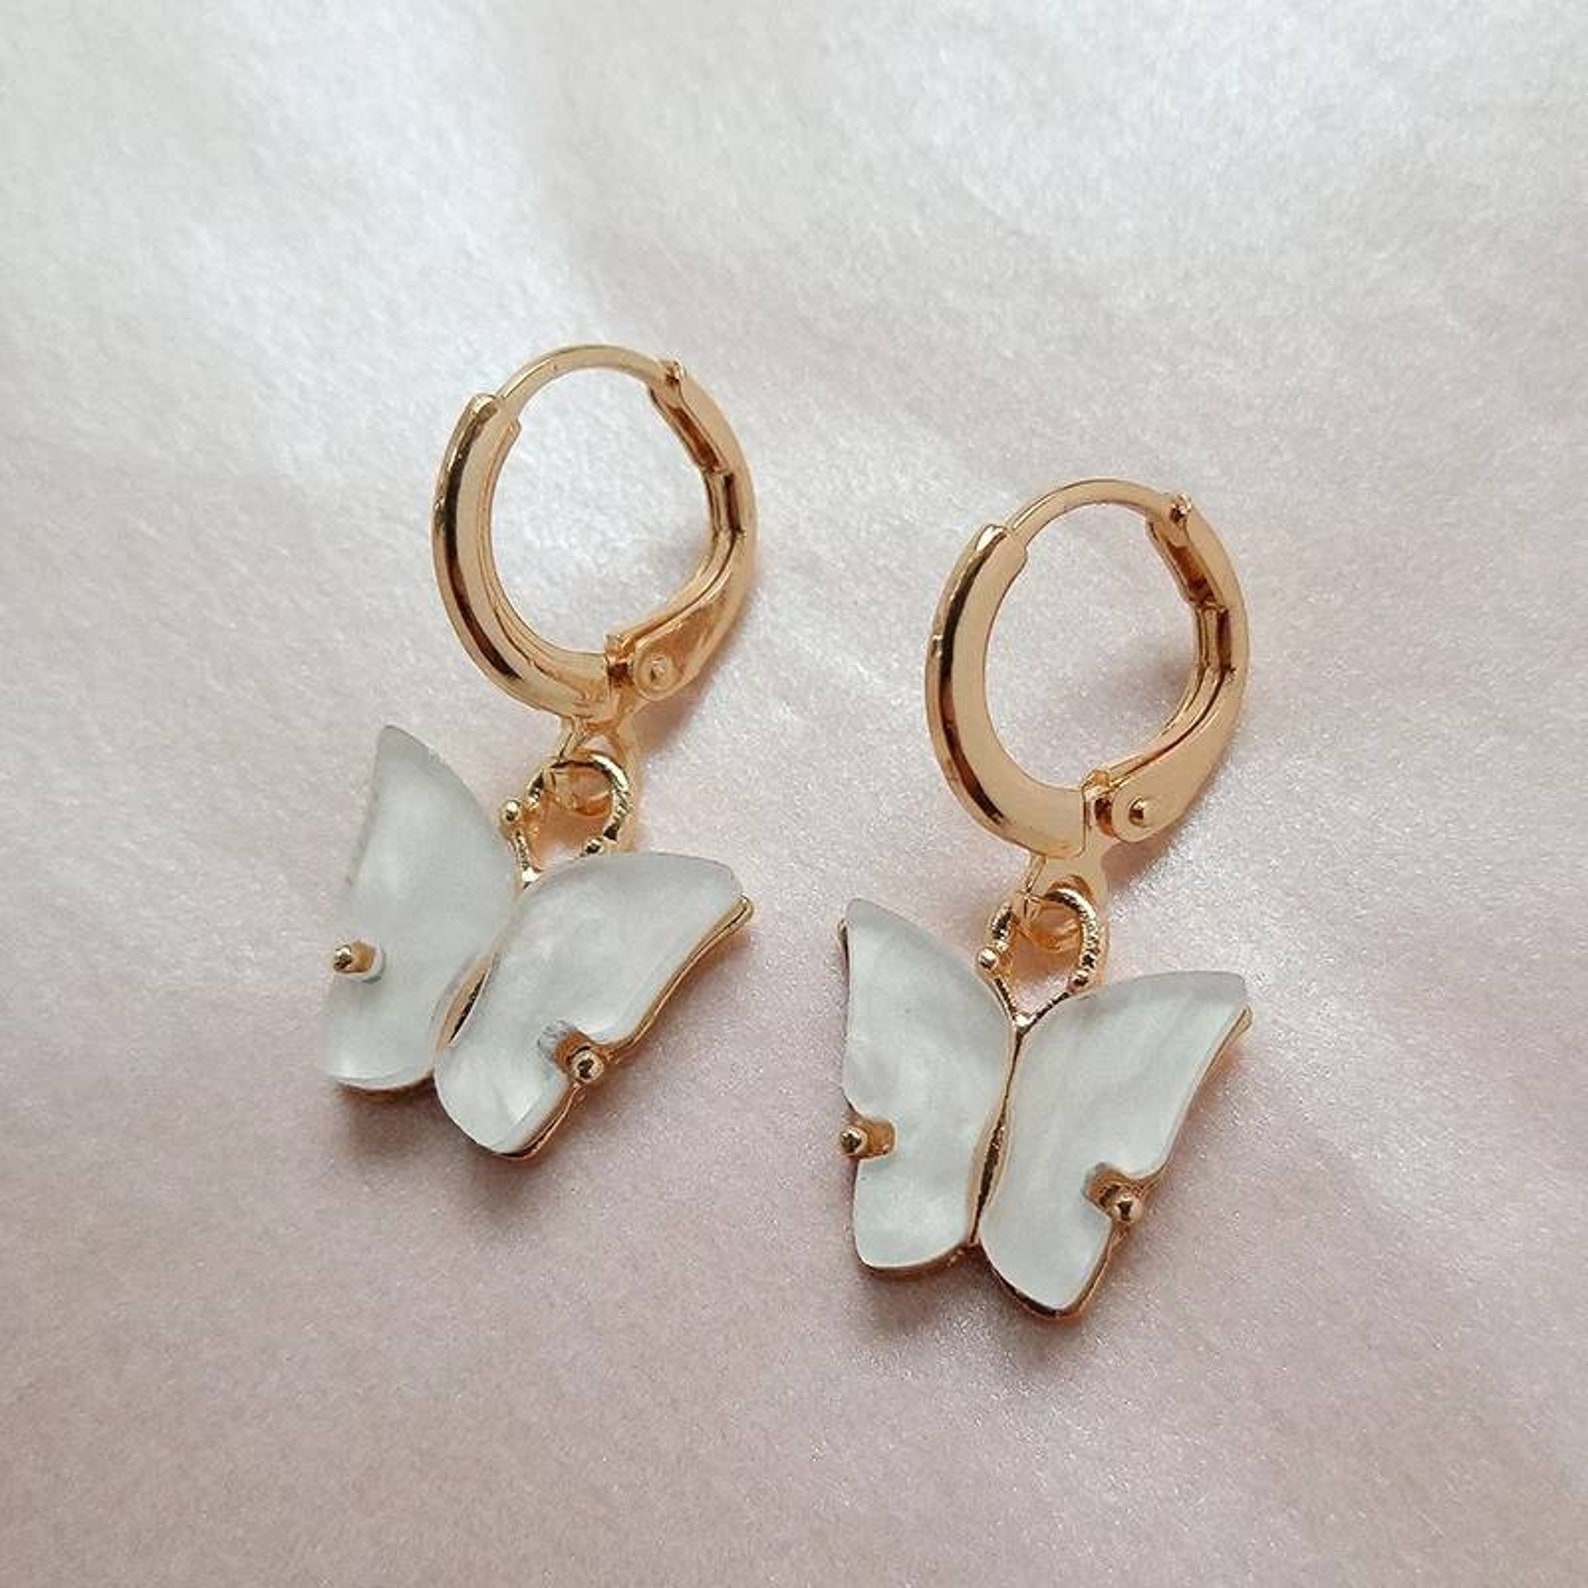 Kpop women's earrings 2021 trend colorful butterfly resin | Etsy